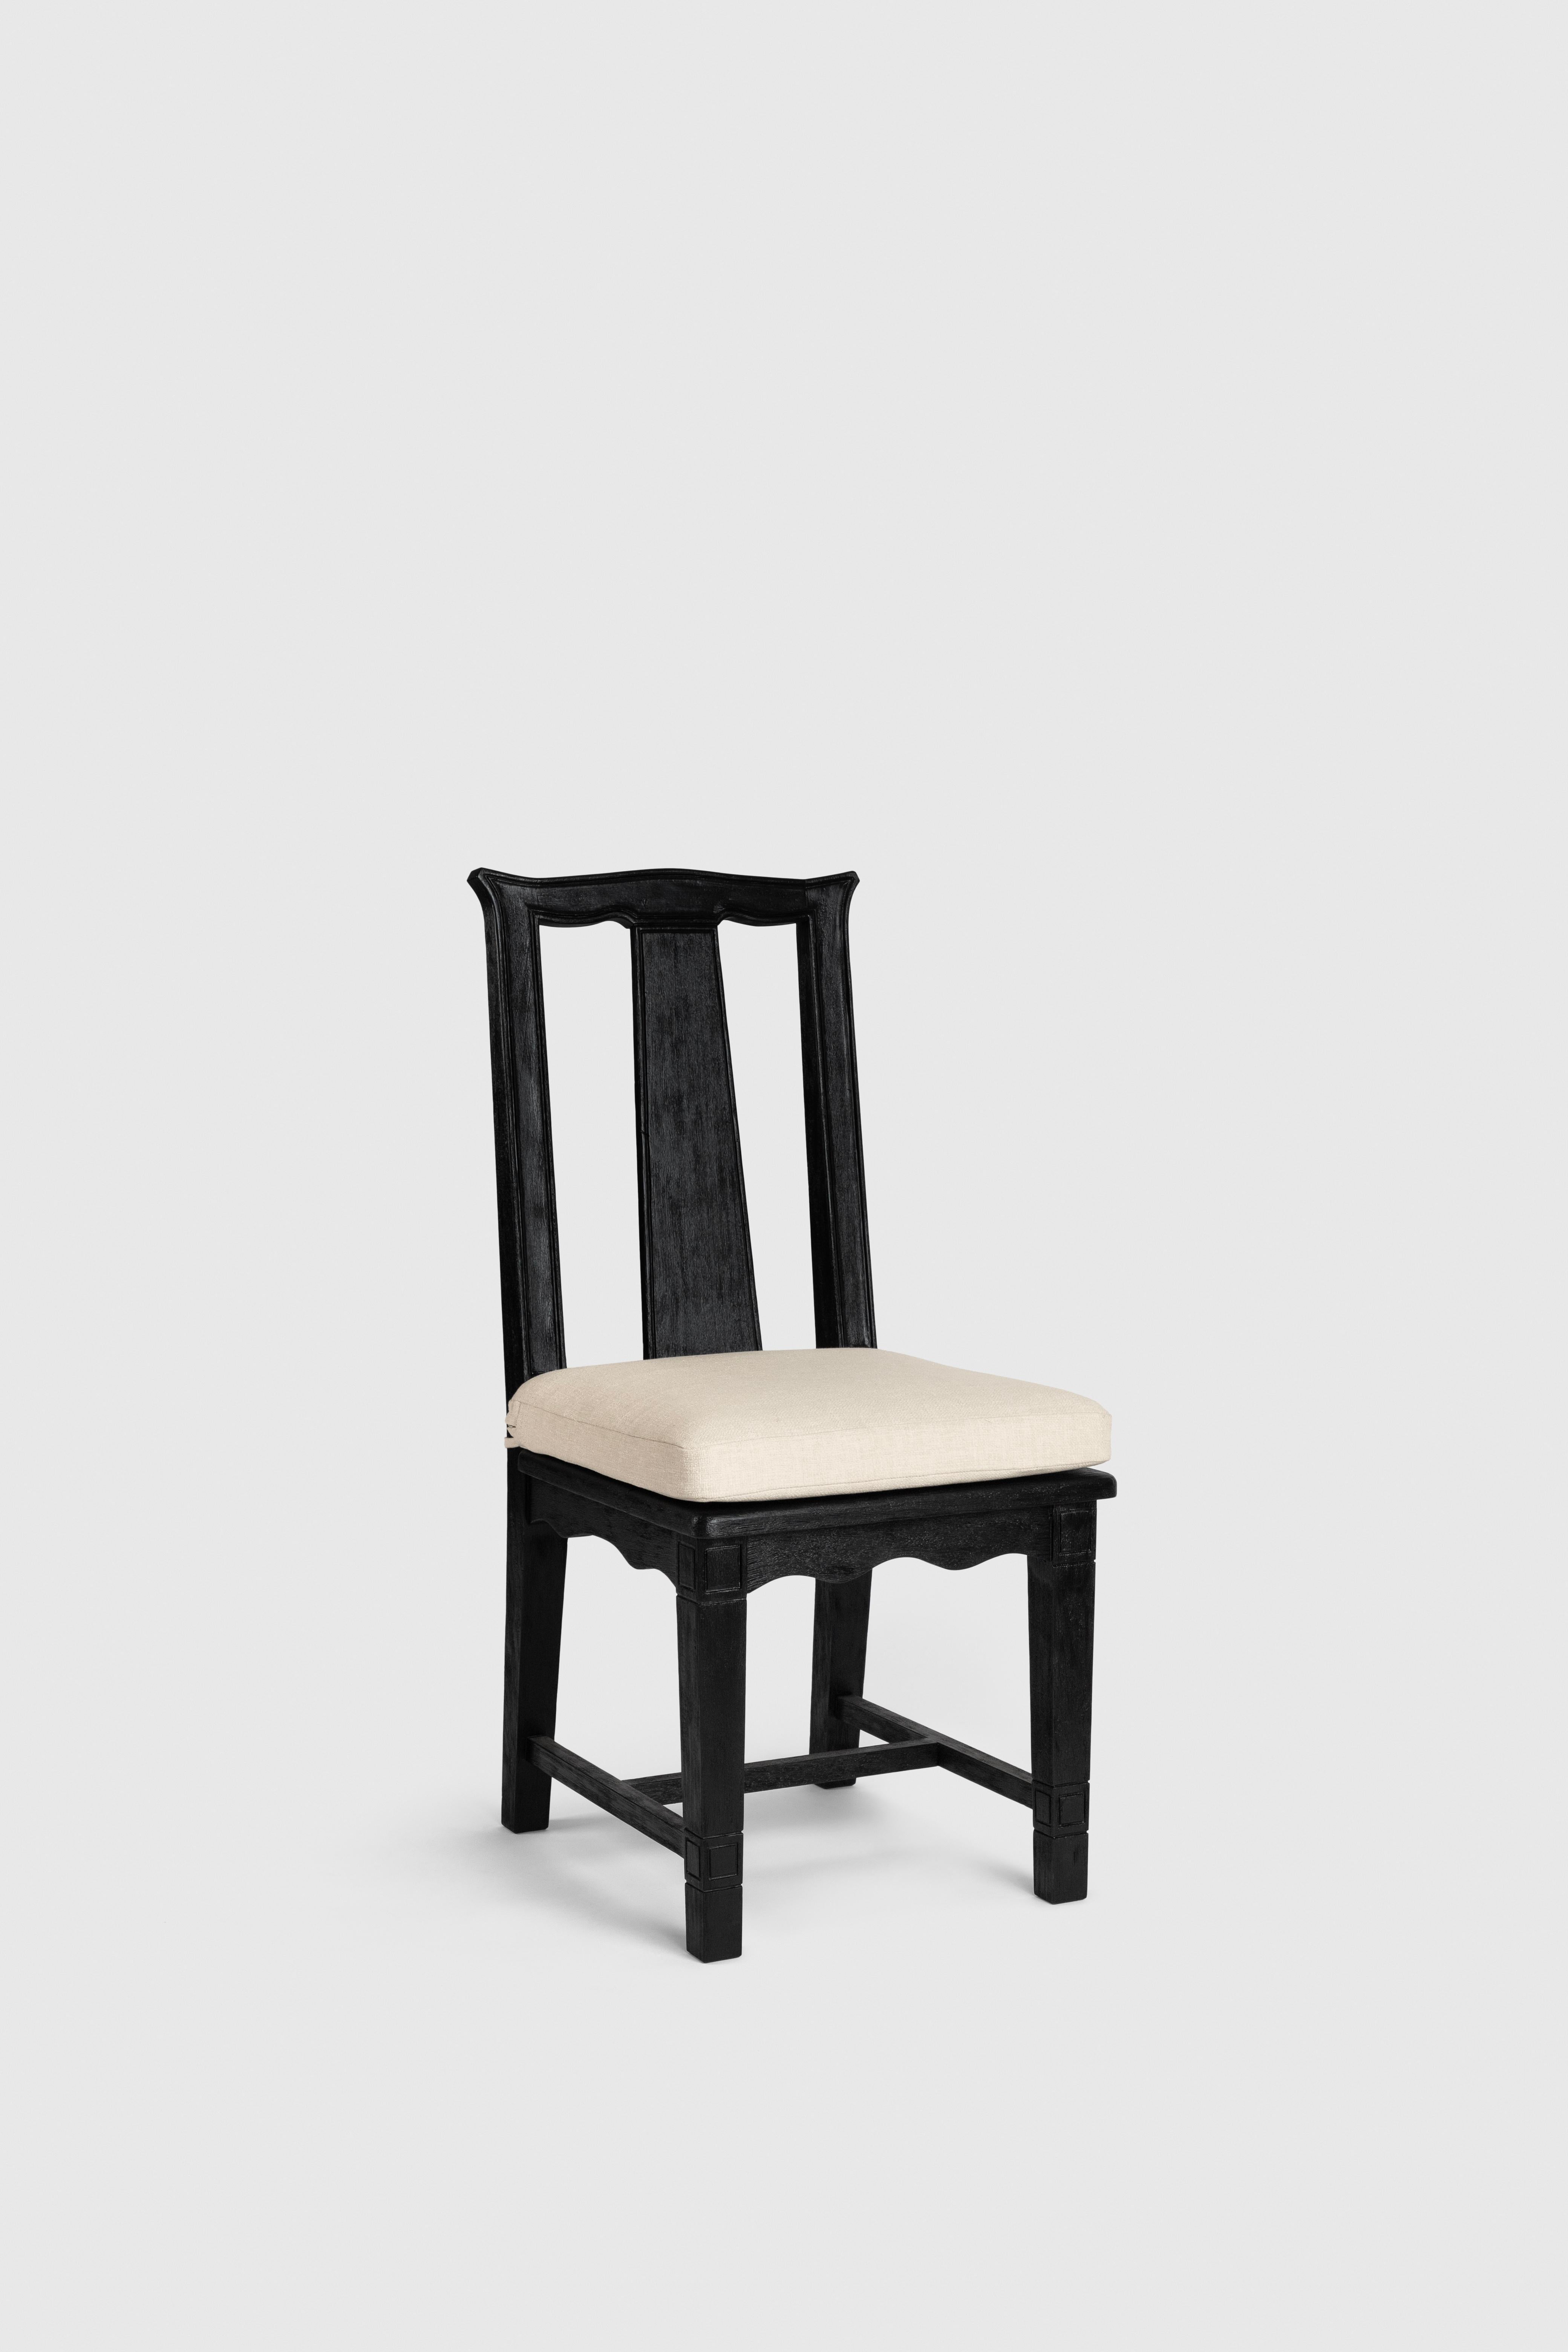 Der Han Chair wurde von Fernanda Loyzaga entworfen. 

Wir von Loyzaga Design waren schon immer fasziniert von der Beziehung zwischen Asien und Mexiko, die durch die Manila Galeon, die von den Philippinen zum Hafen von Acapulco fuhr, hergestellt